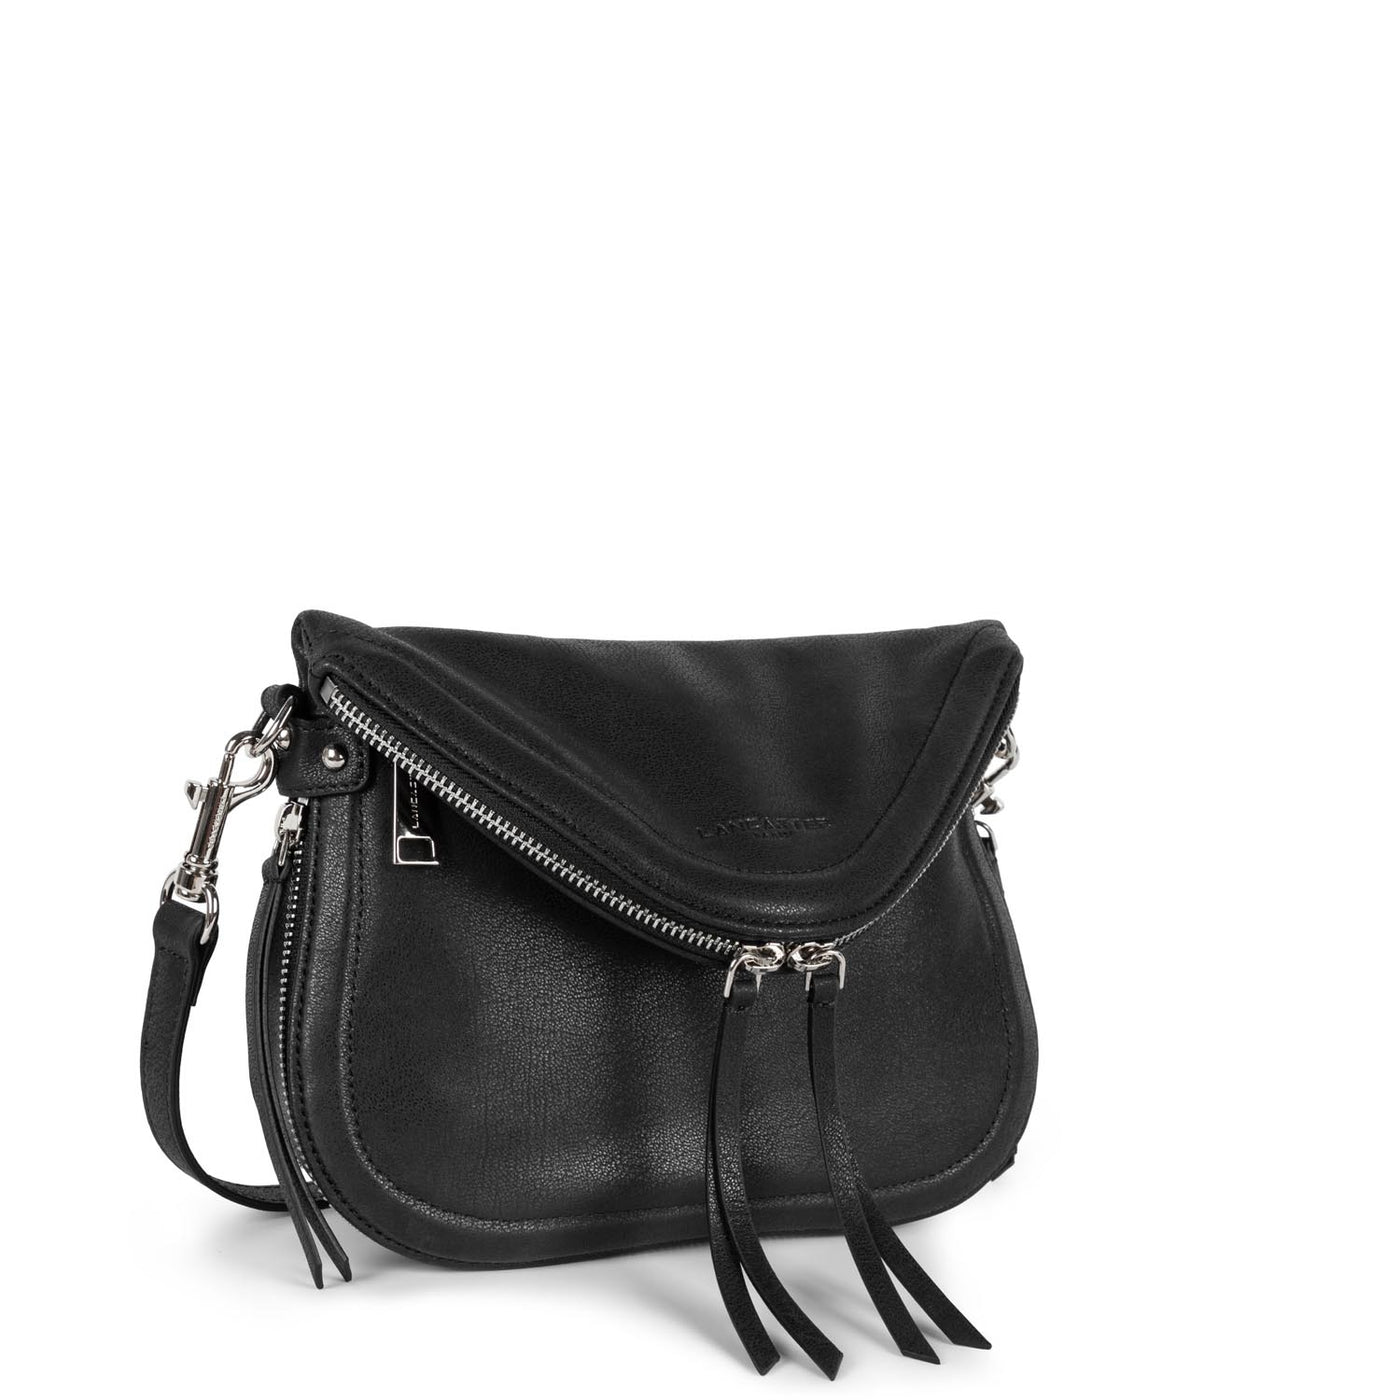 m shoulder bag - santa fe lisi #couleur_noir